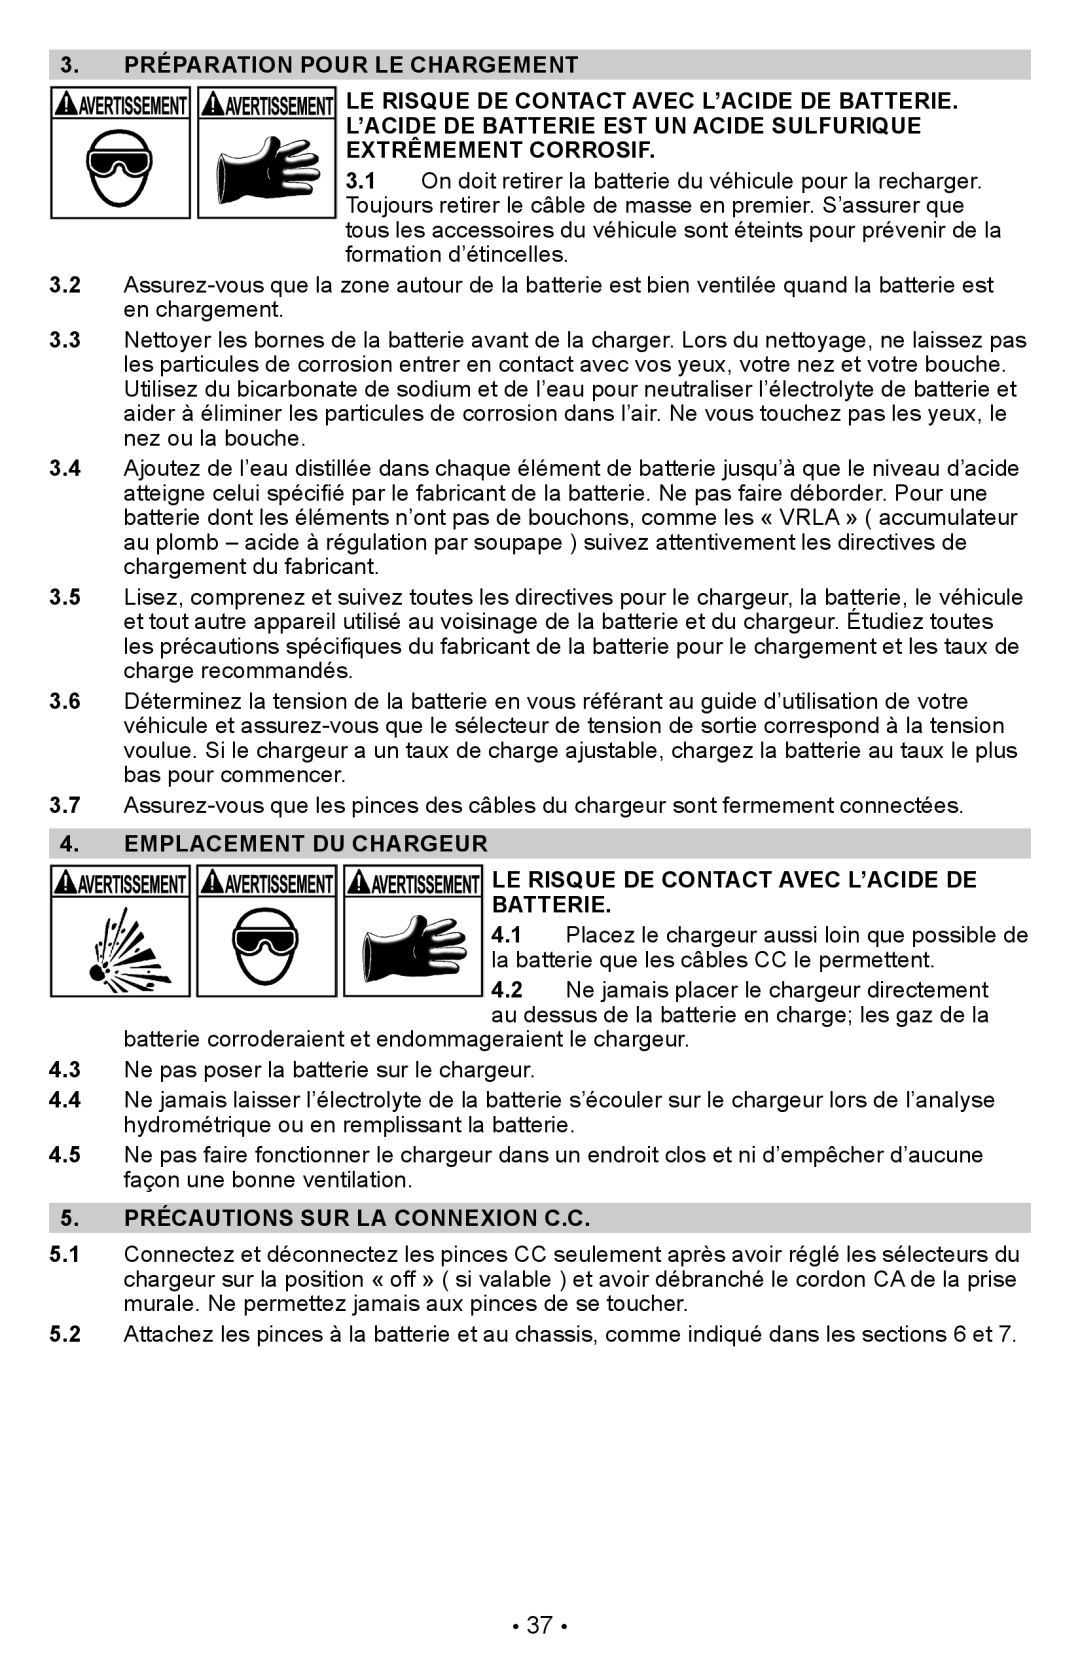 Schumacher PSW-22 owner manual 3. PRÉPARATION POUR LE CHARGEMENT, Le Risque De Contact Avec L’Acide De Batterie 